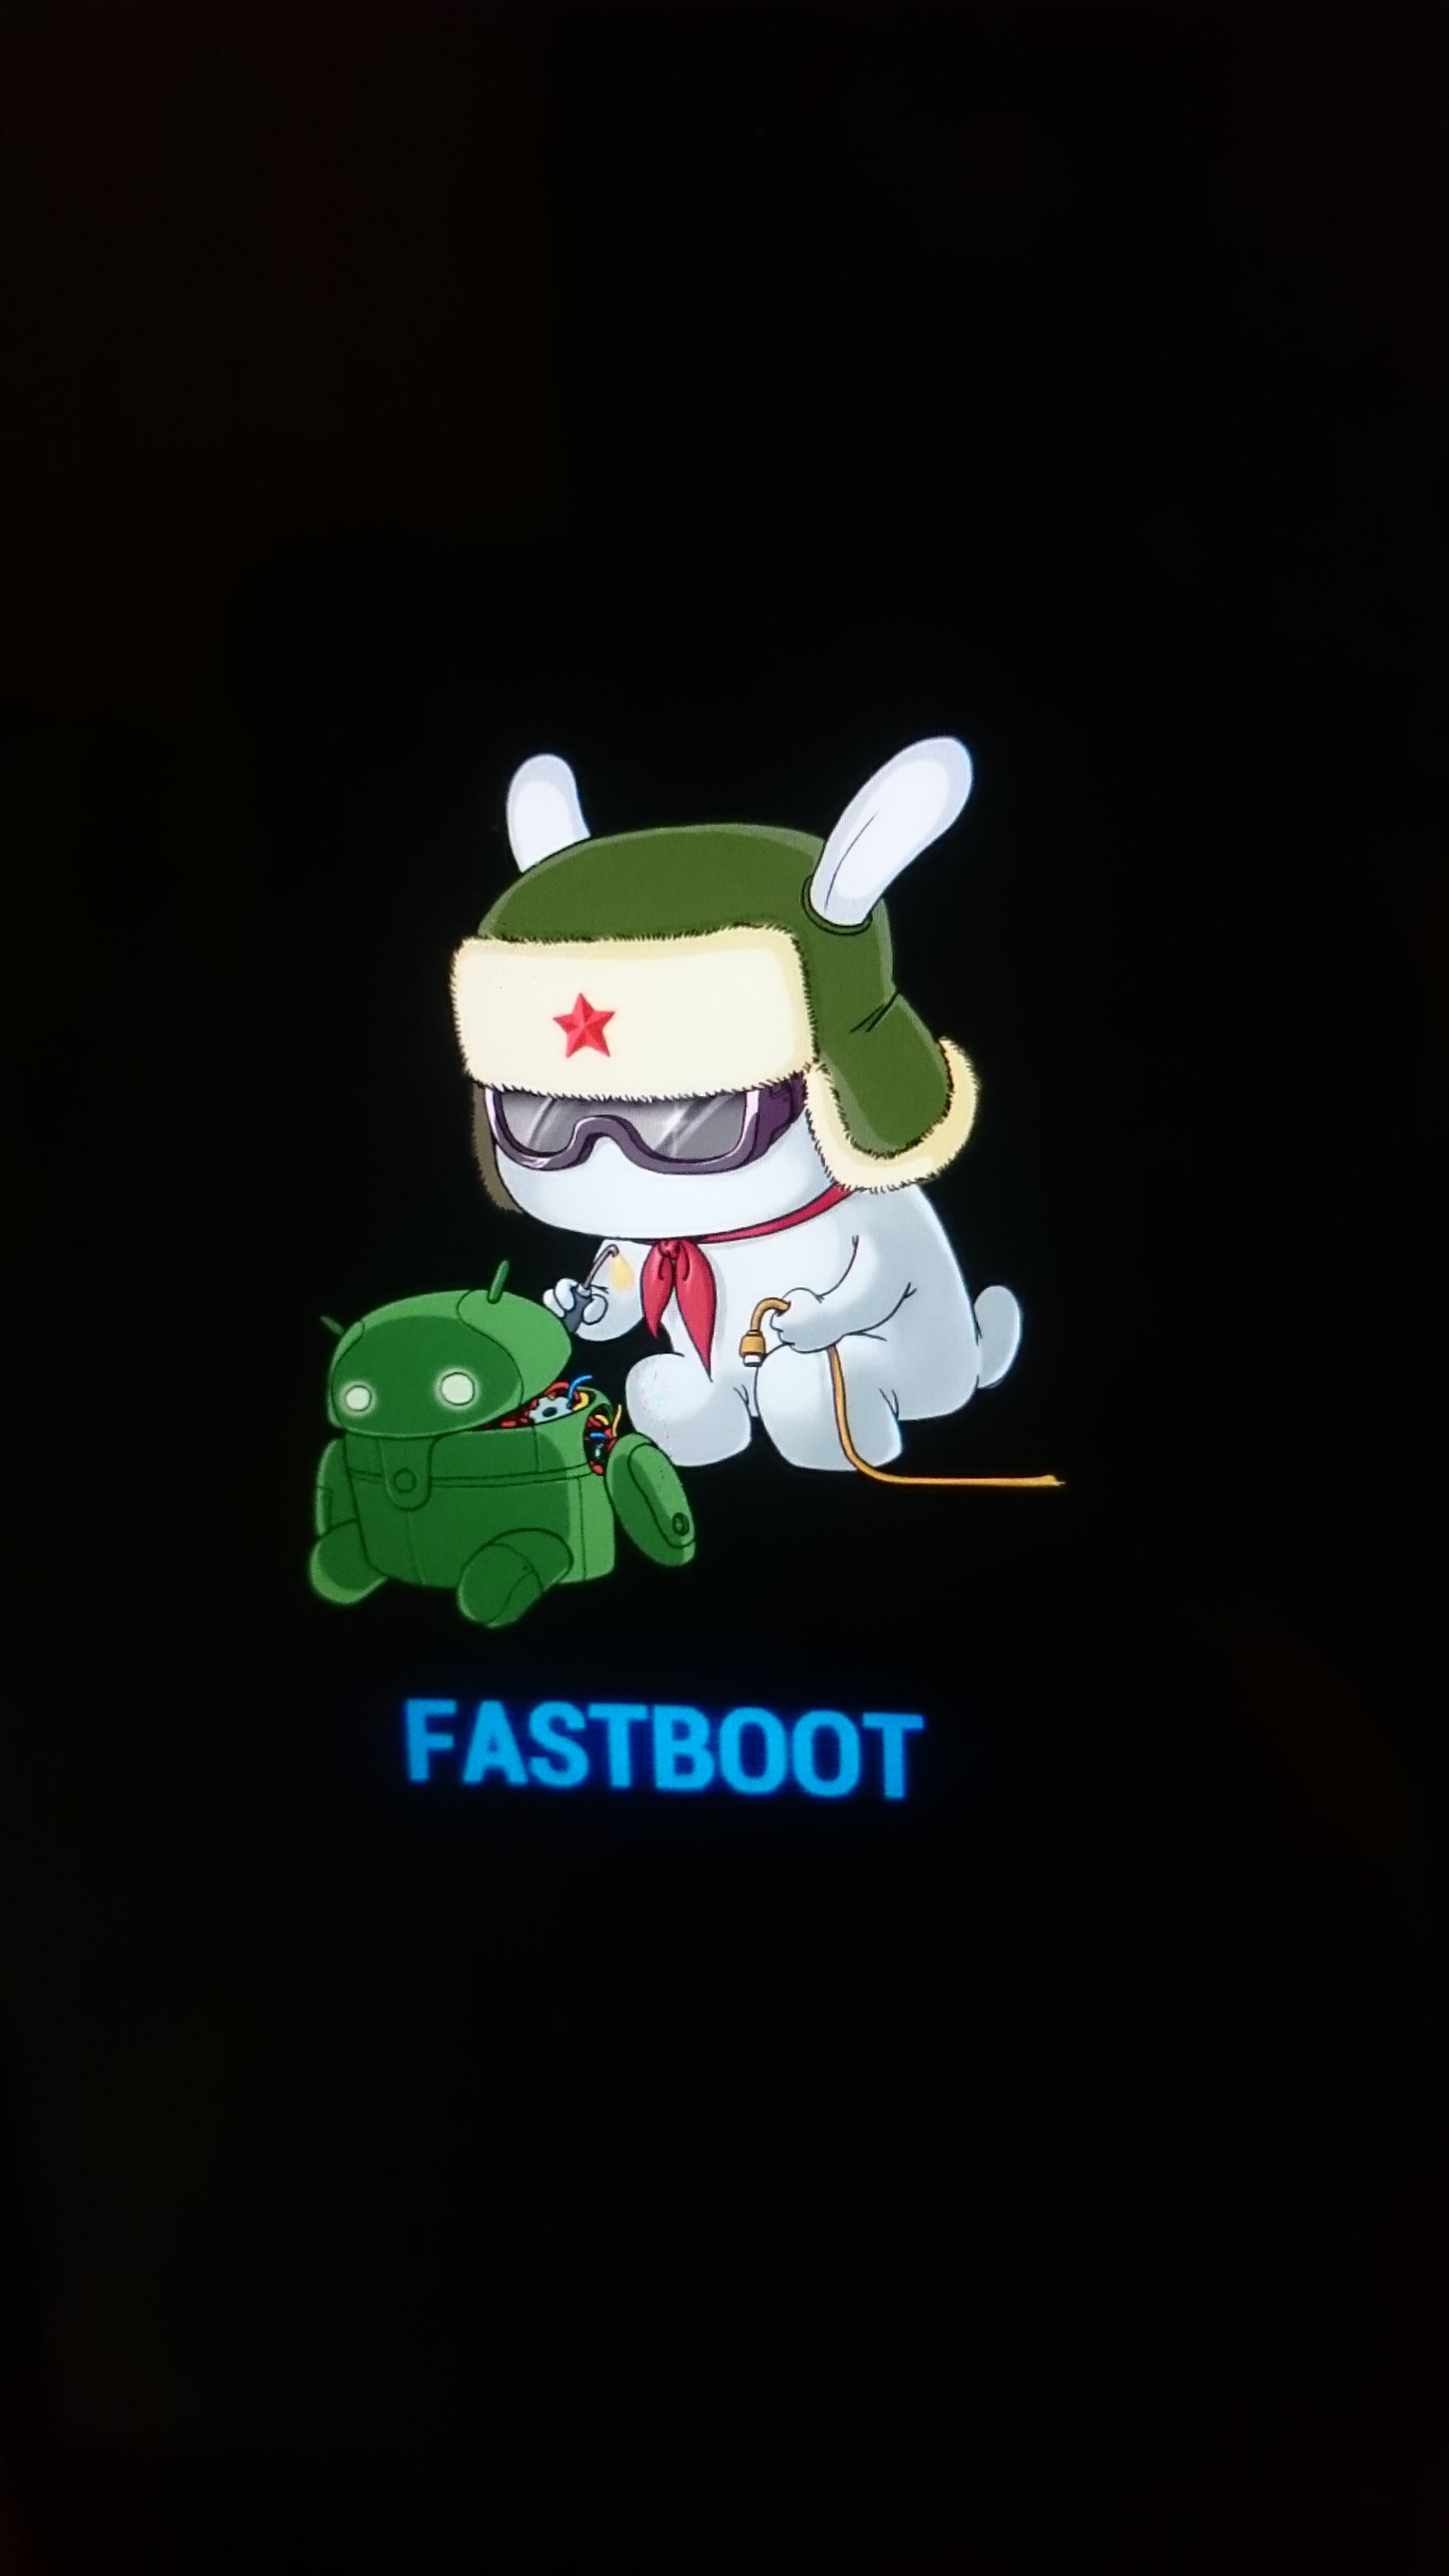 Как убрать фаст бот. Кролик Xiaomi Fastboot. Заяц андроид Fastboot. Xiaomi заяц Fastboot logo. Андроид картинка Fastboot.